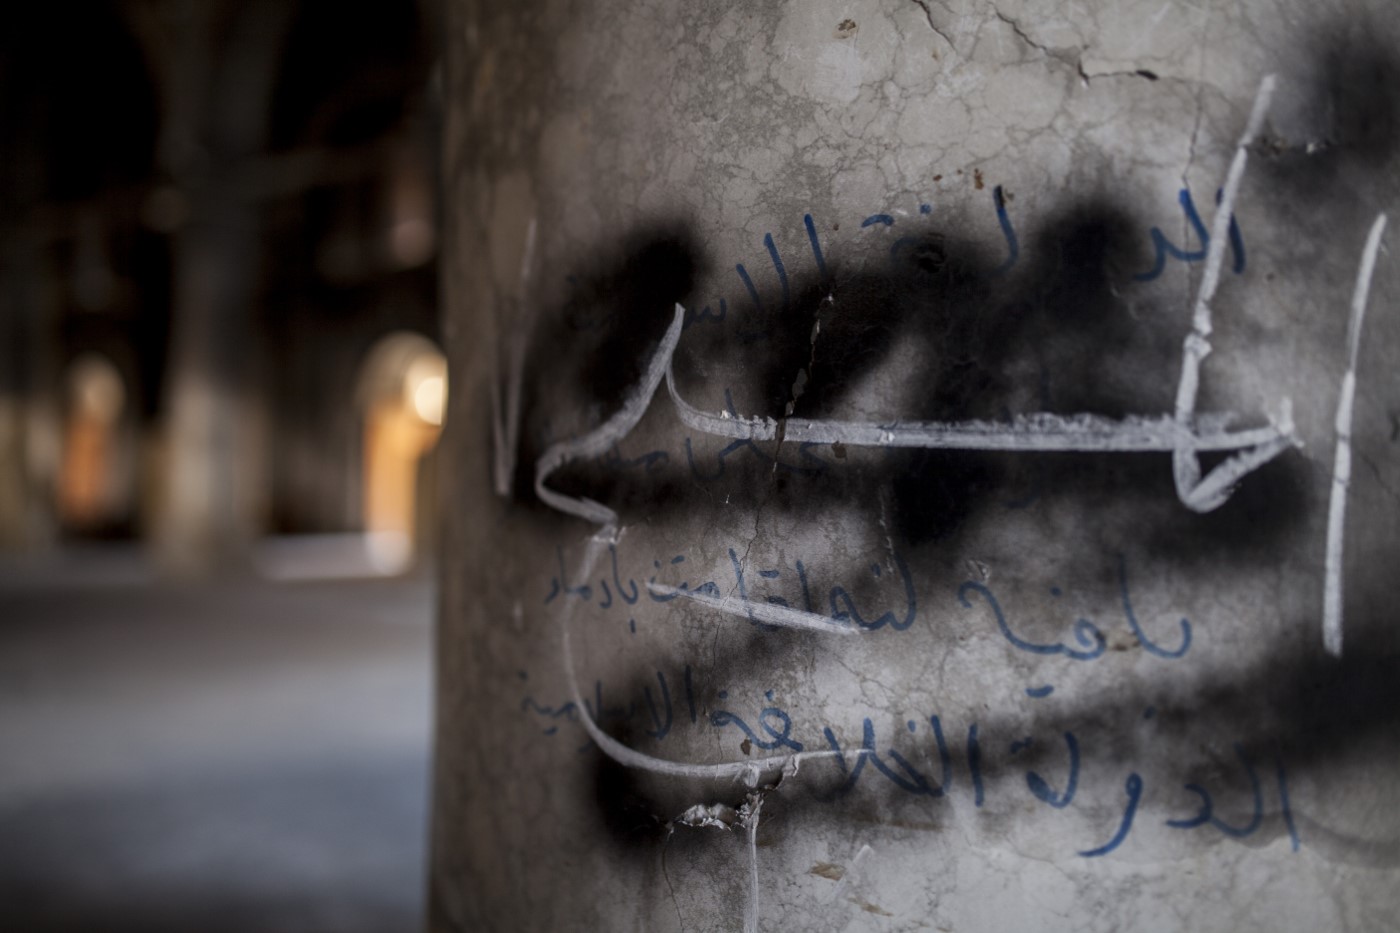 Inscripción en árabe dibujada por los miembros del EI en uno de los pilares del interior de la iglesia Kanesa Altaherea Alkbra: "(...) El Estado Islámico permanece porque tiene sangre" La iglesia fue ocupada y luego incendiada por el Daesh en 2016. Qaraqosh - Hamdania - Mosul, Irak. 17 de abril de 2017